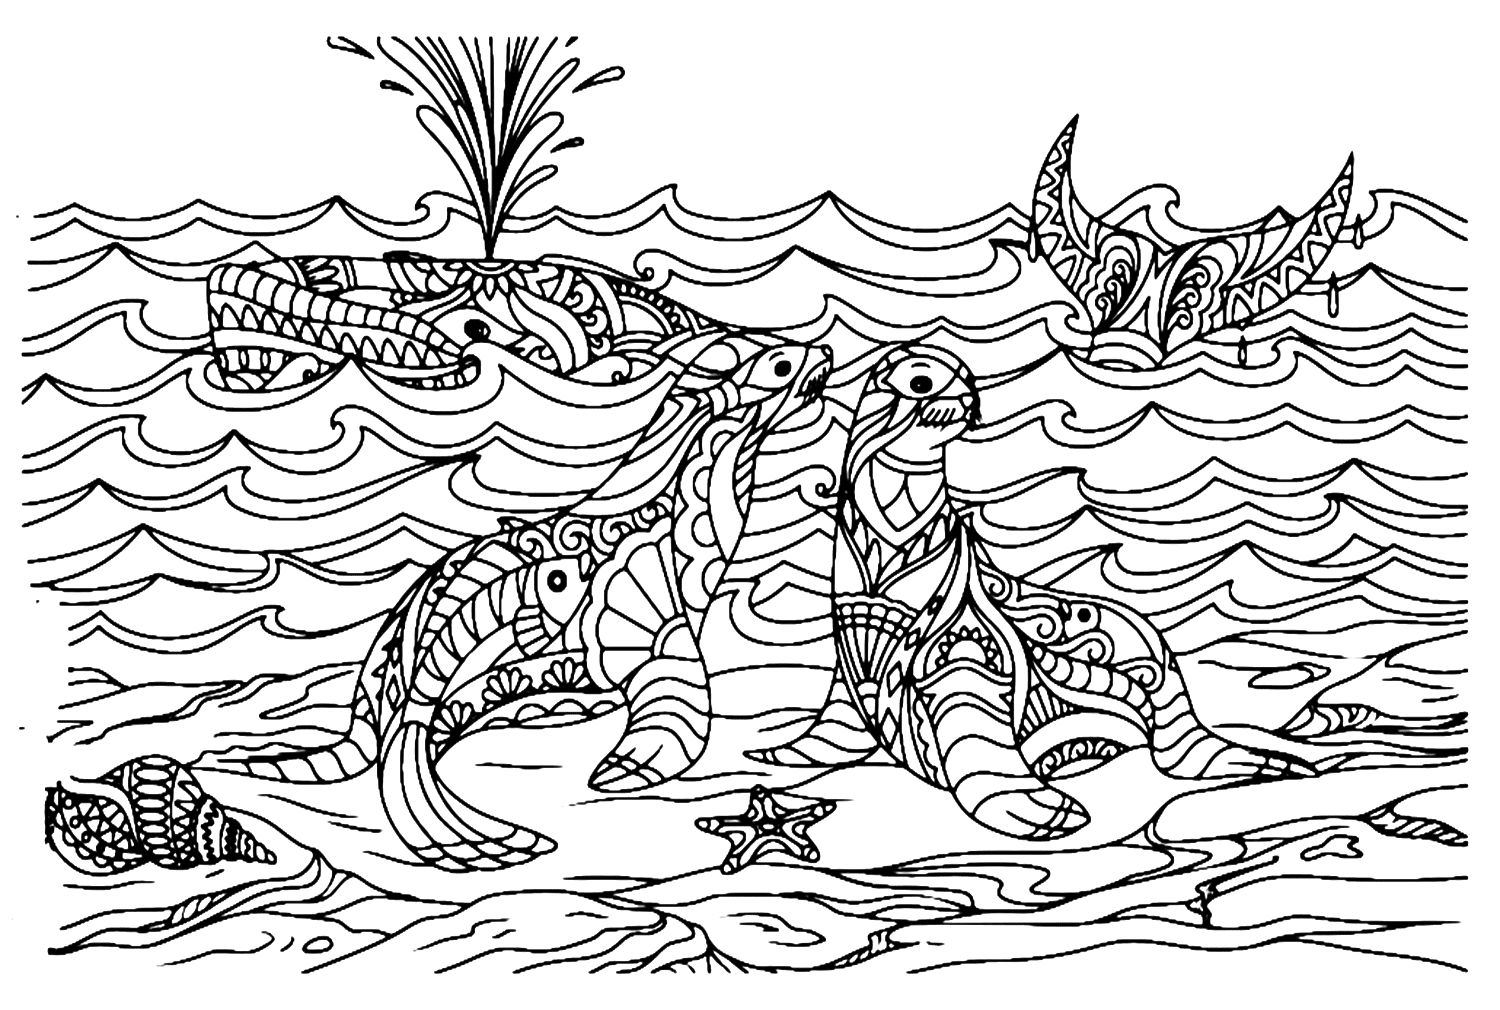 Mandala Leone marino e balena from Leone marino